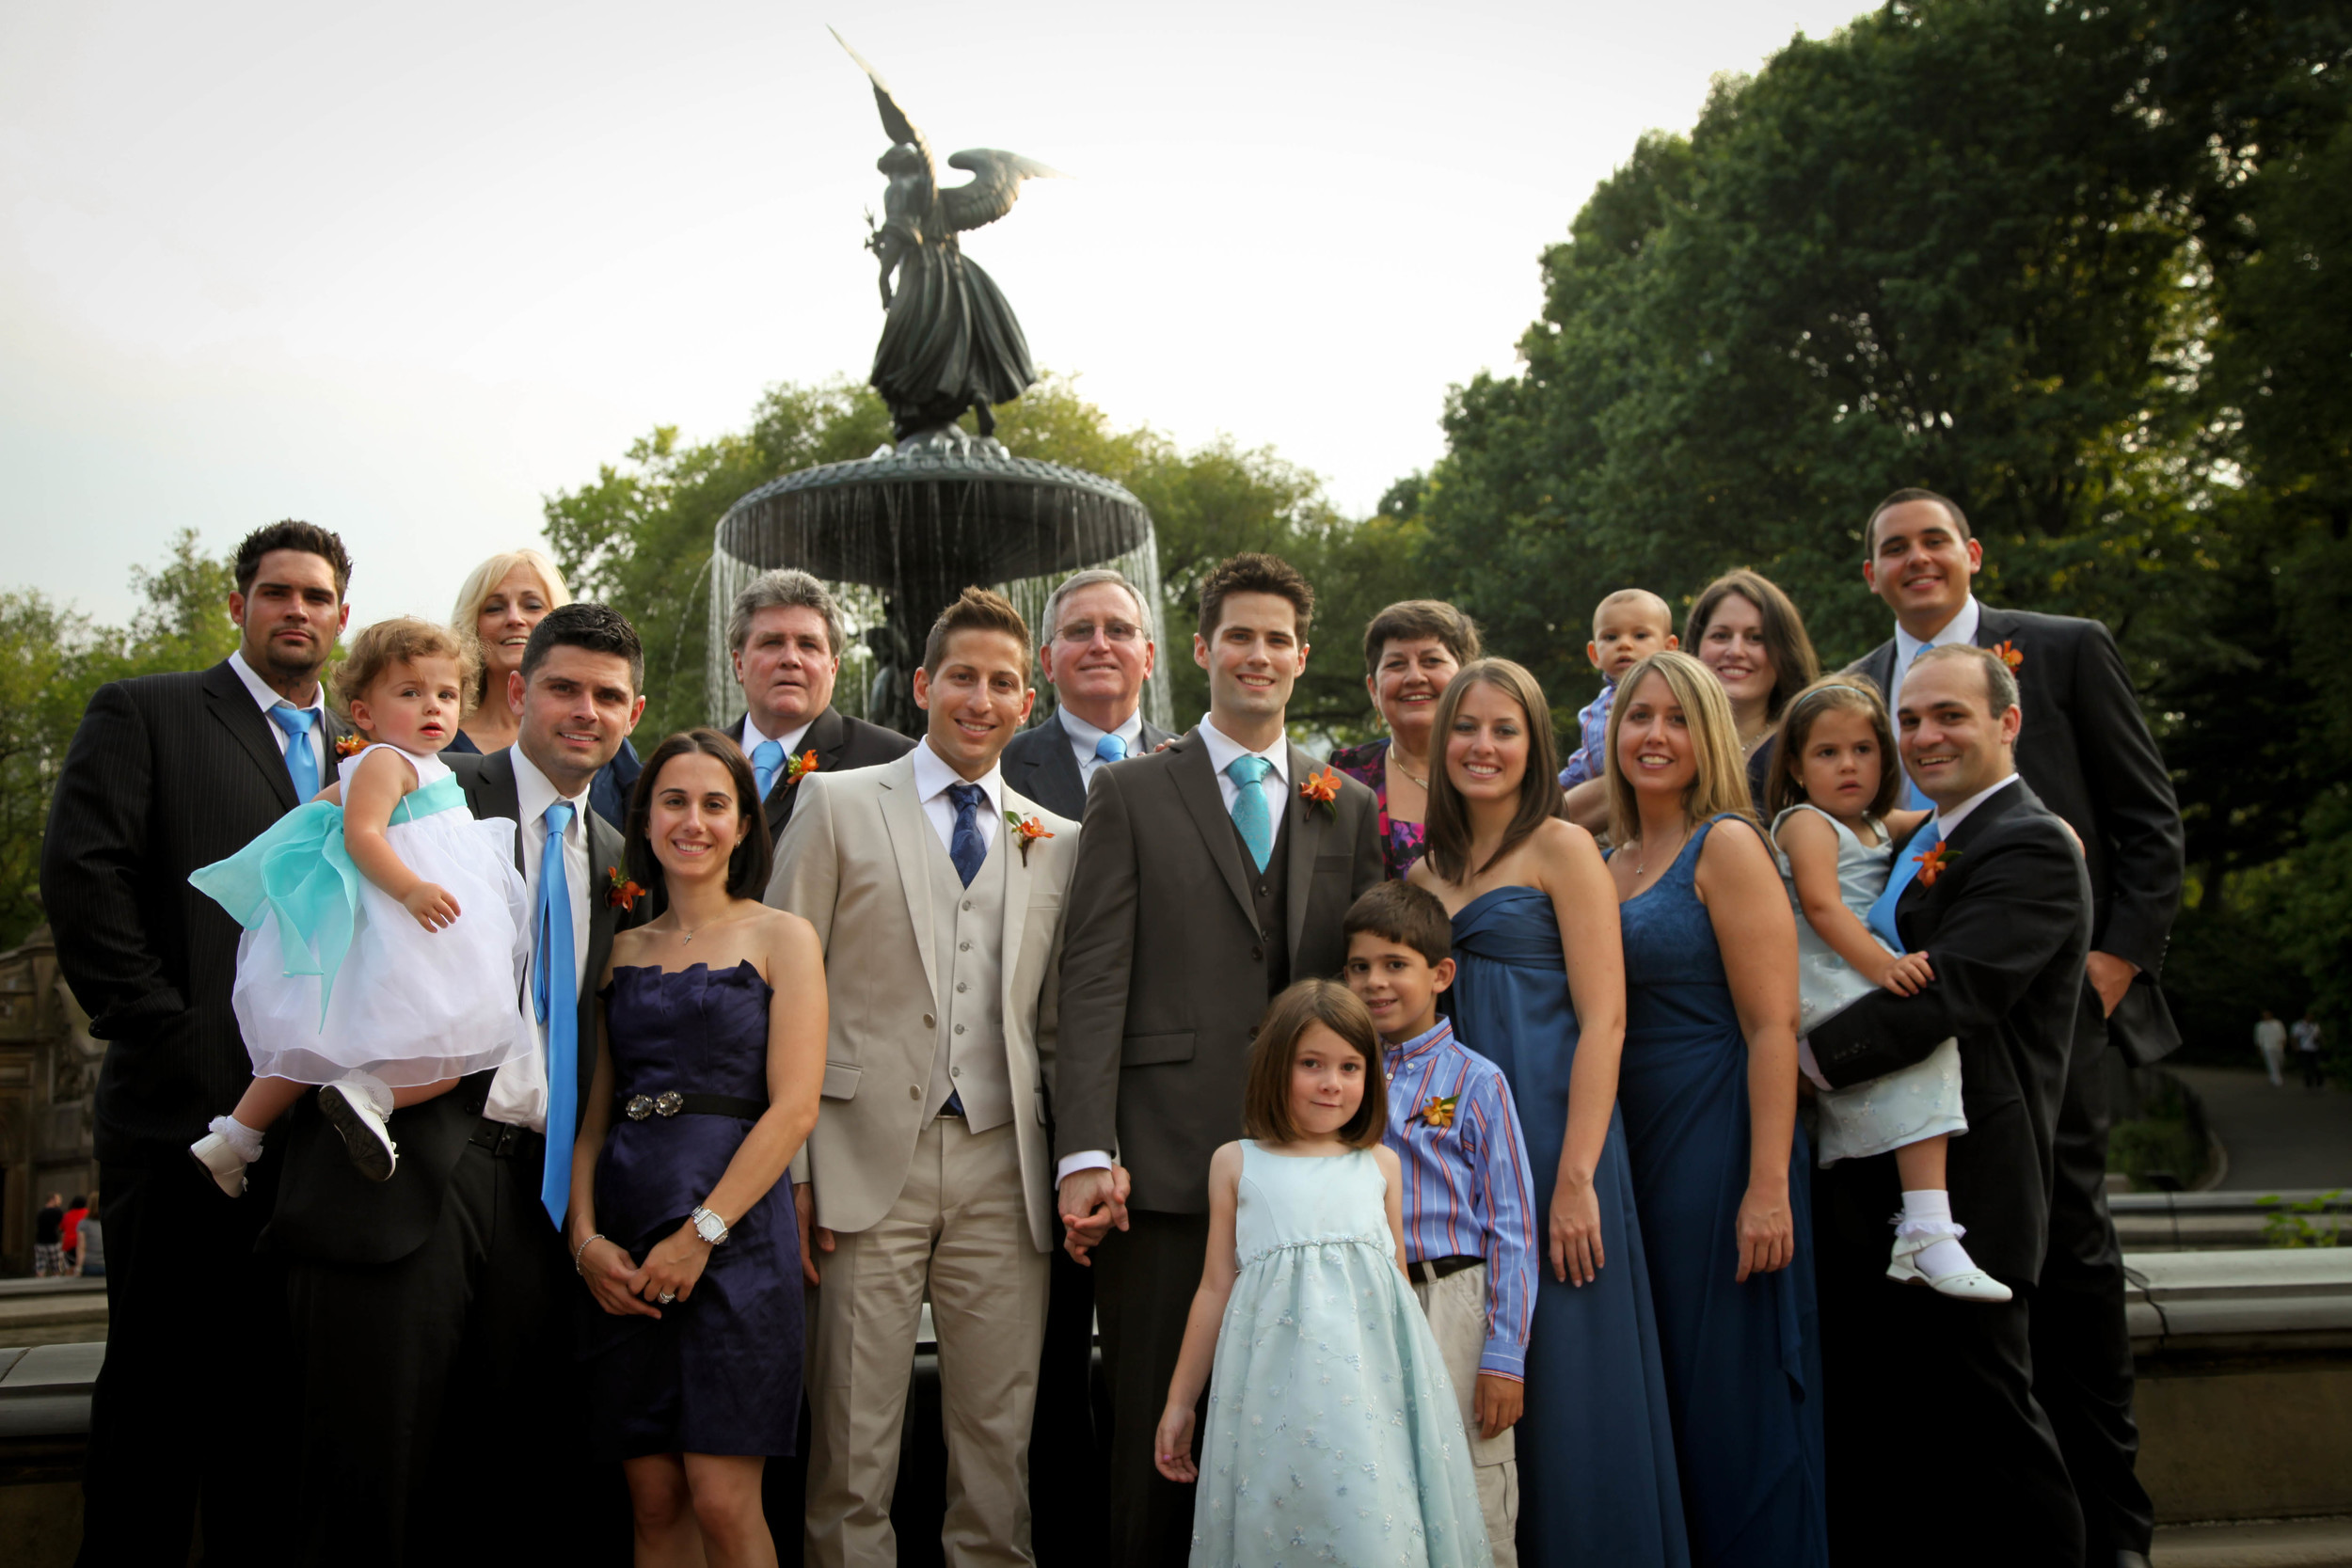  The full family wedding shot in Central Park. 